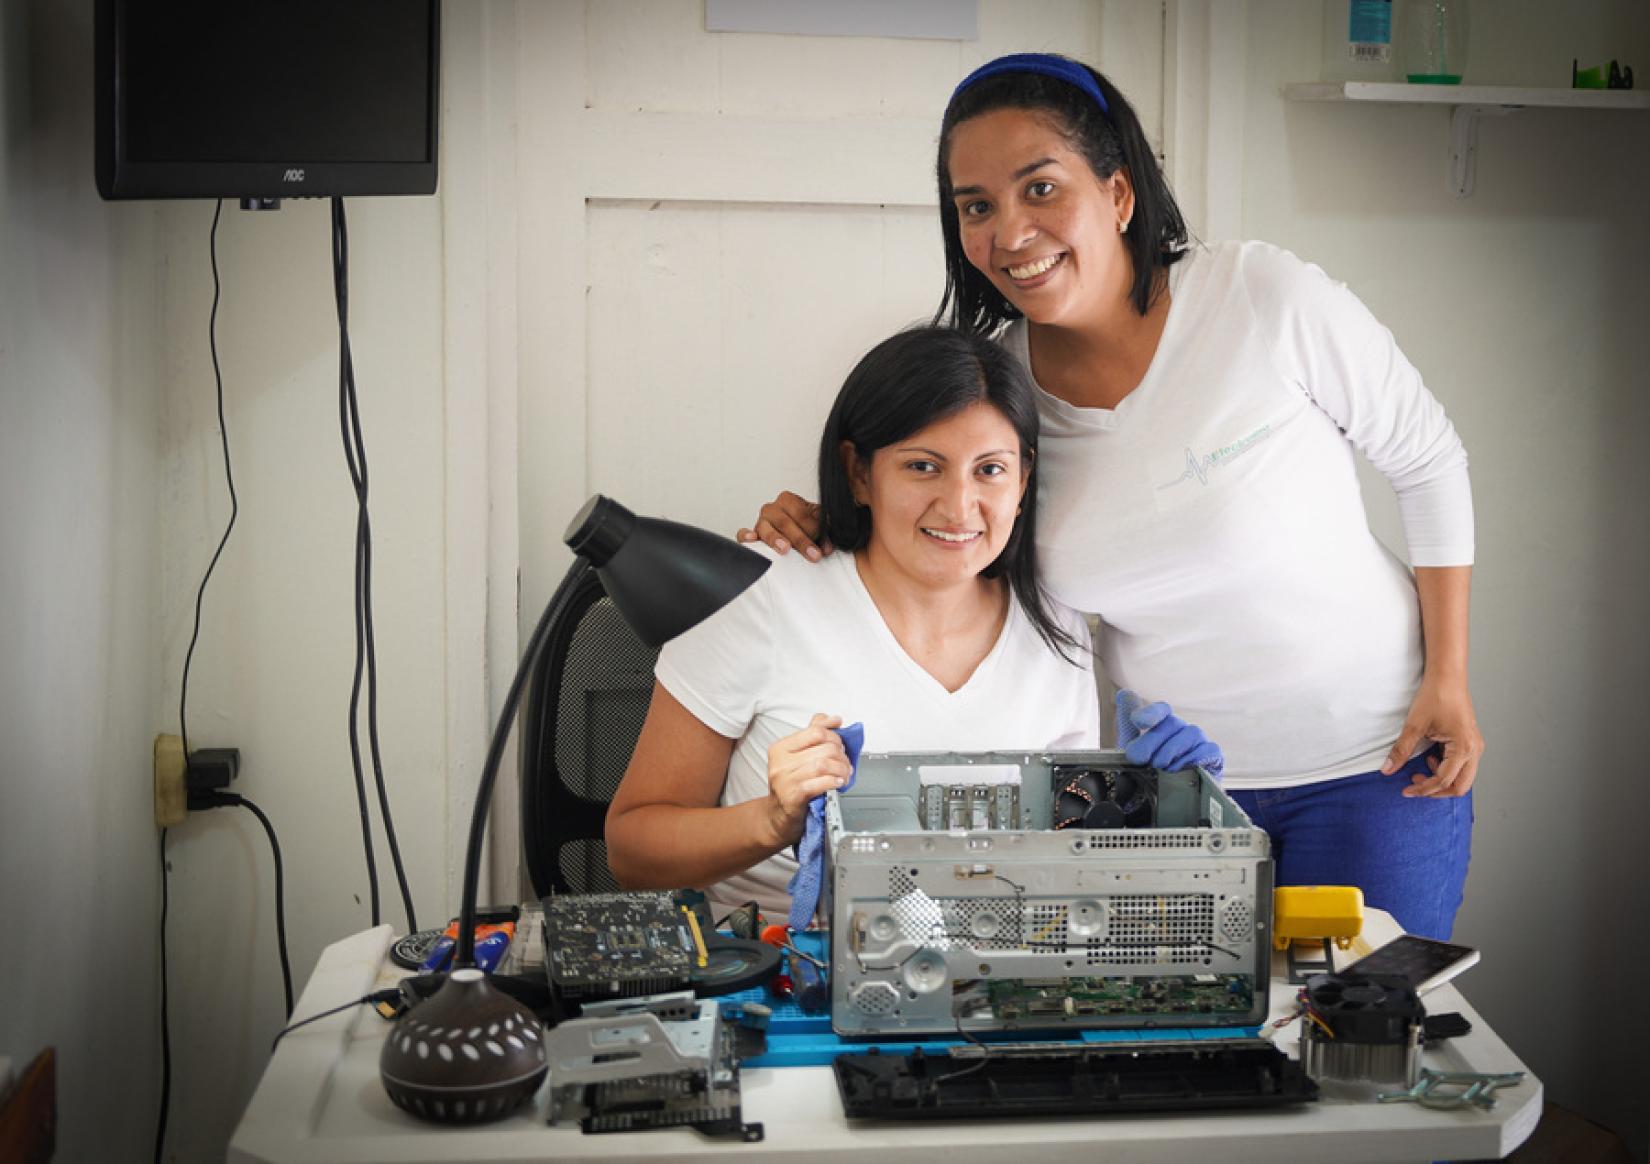 Mercedes e Nathaly, duas engenheiras de computação venezuelanas, chegaram à Guiana com 20 dólares em 2019 em busca de uma vida melhor. Com apoio da OIM e do governo local, as duas amigas criaram a Electrobio, empresa de concerto de aparelhos elétricos, o que lhes permitiu suprir suas necessidades e ajudar suas famílias. Créditos: Gema Cortés/IOM 2023